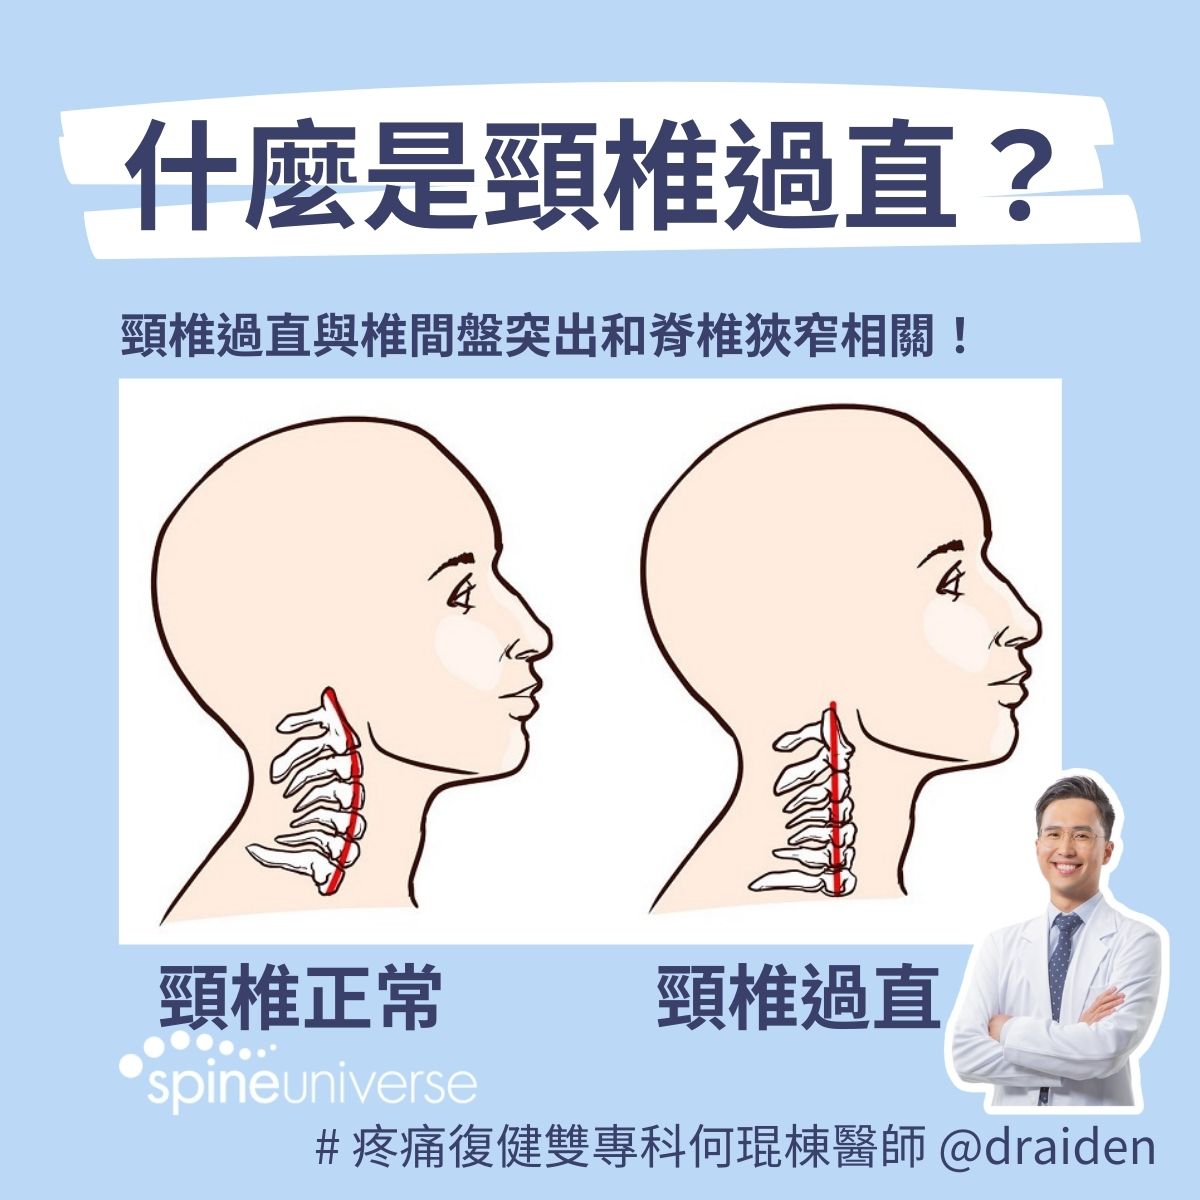 頸椎過直與頸椎間盤突出及脊椎狹窄相關